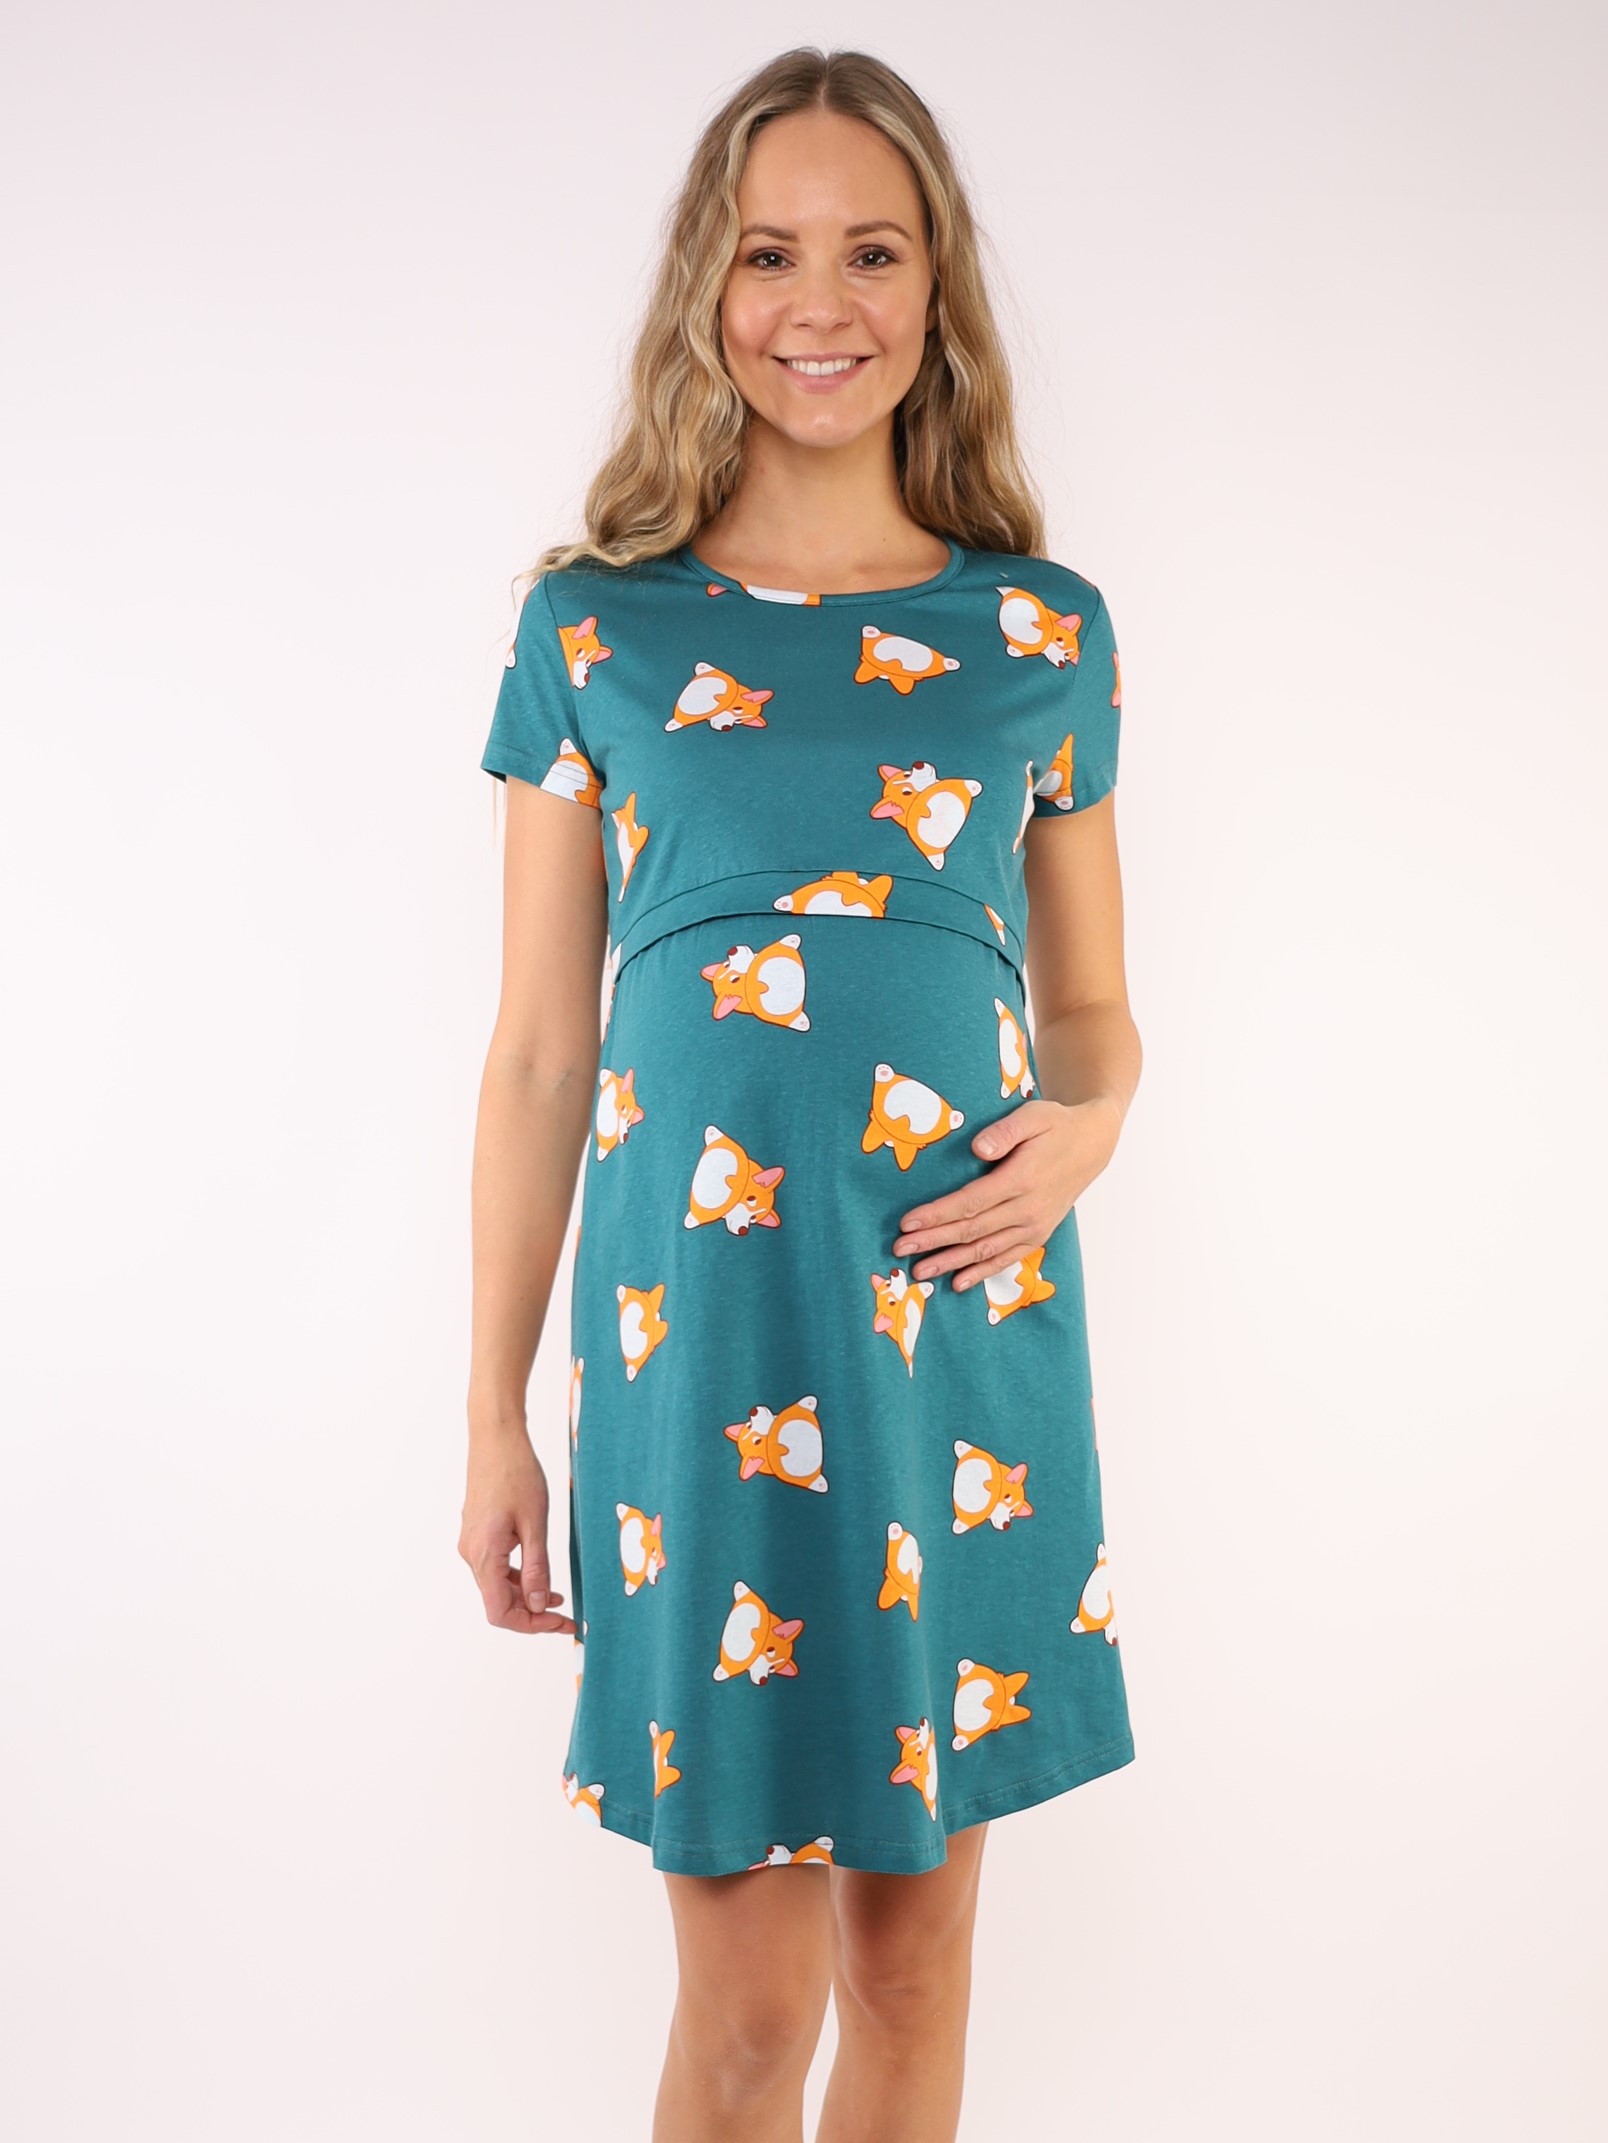 Сорочка для беременных и кормящих (домашнее платье) арт. 360360 зеленый/корги